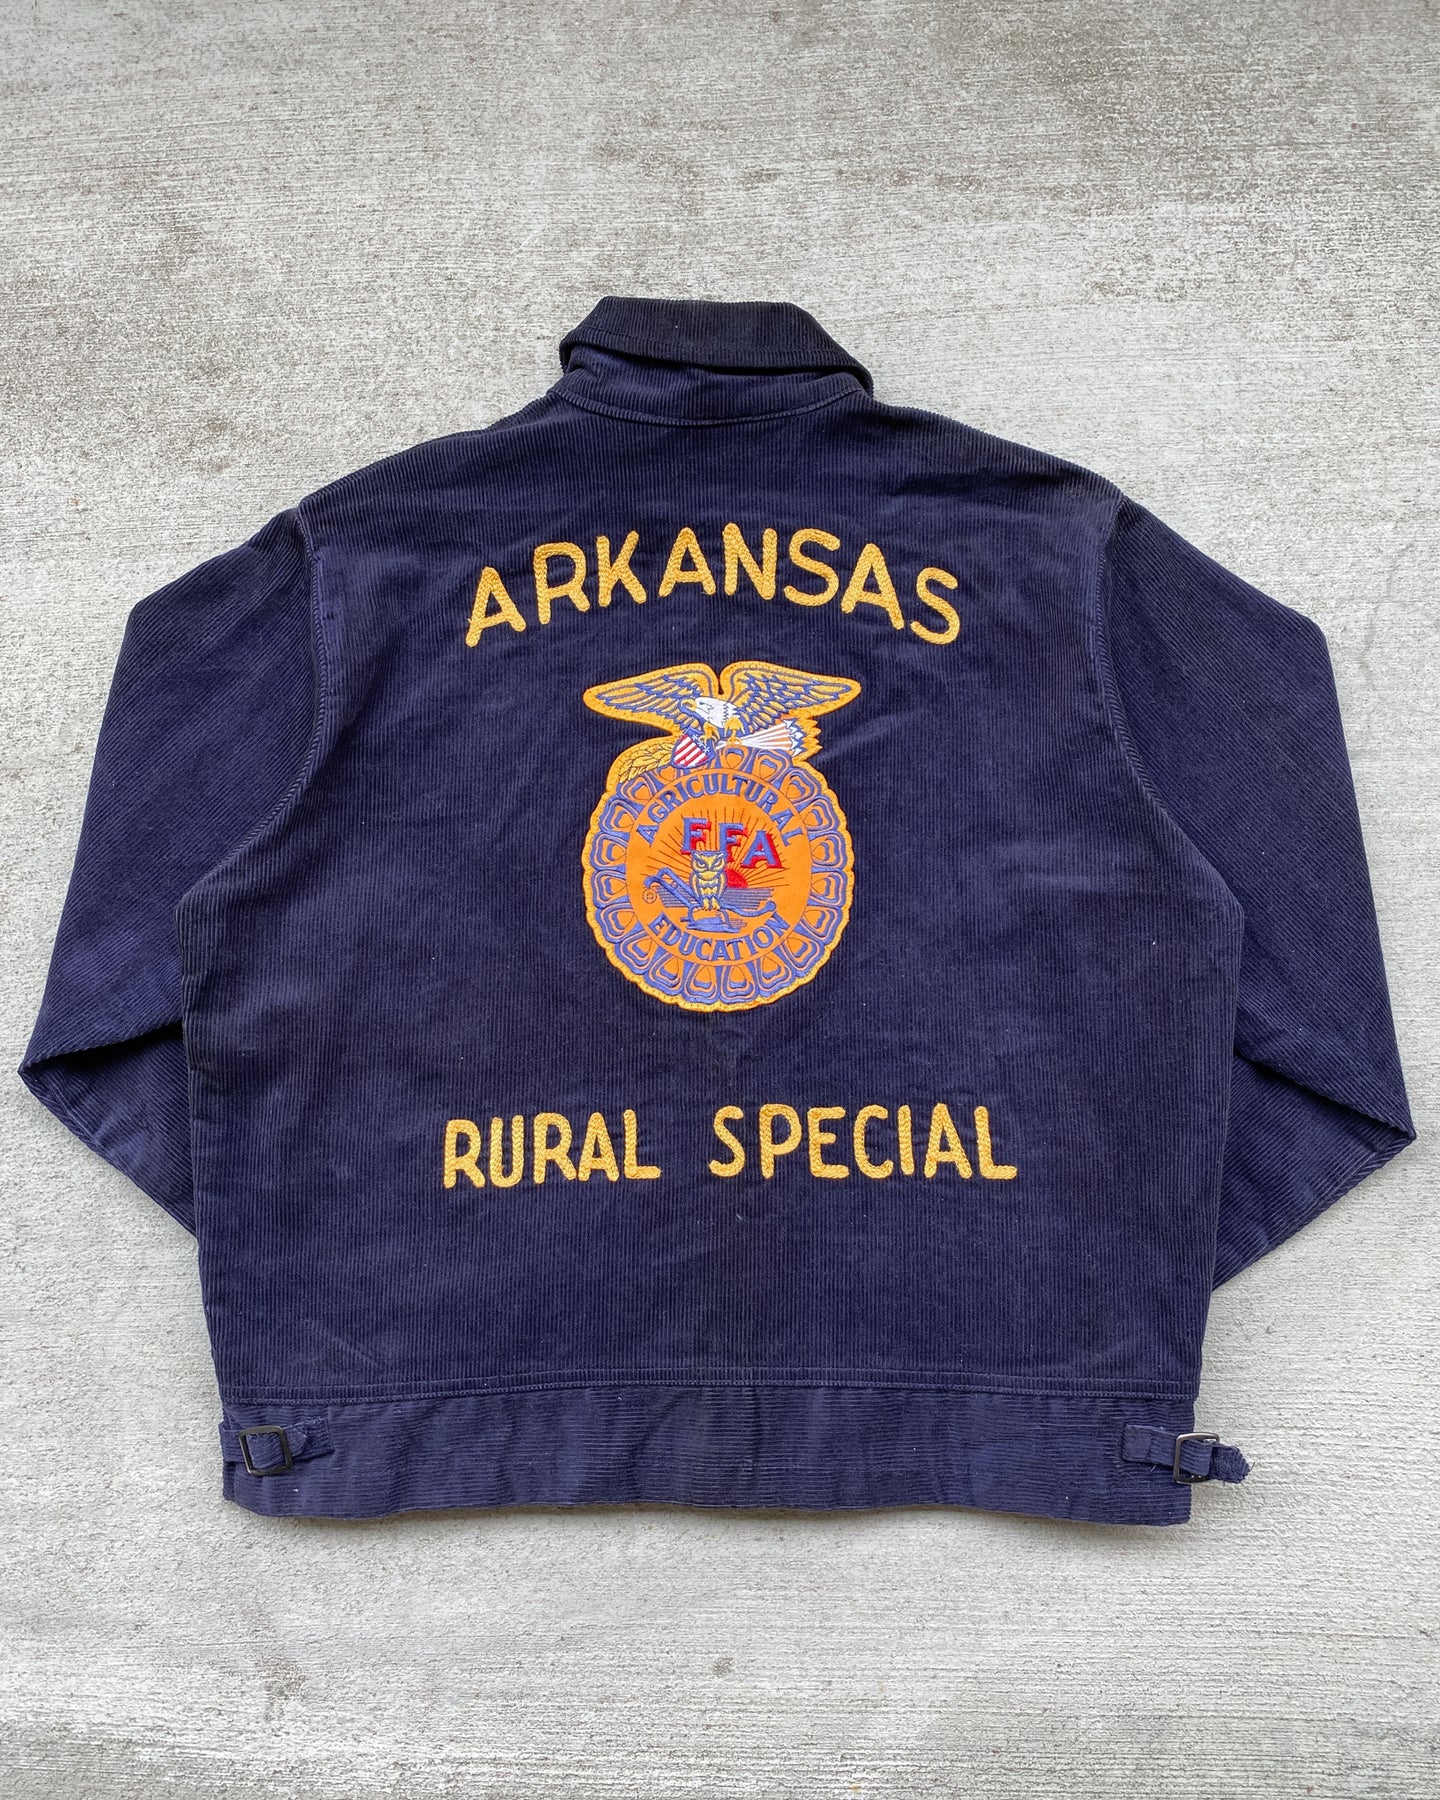 1980s Arkansas Chainstitched FFA Corduroy Jacket - Size Large